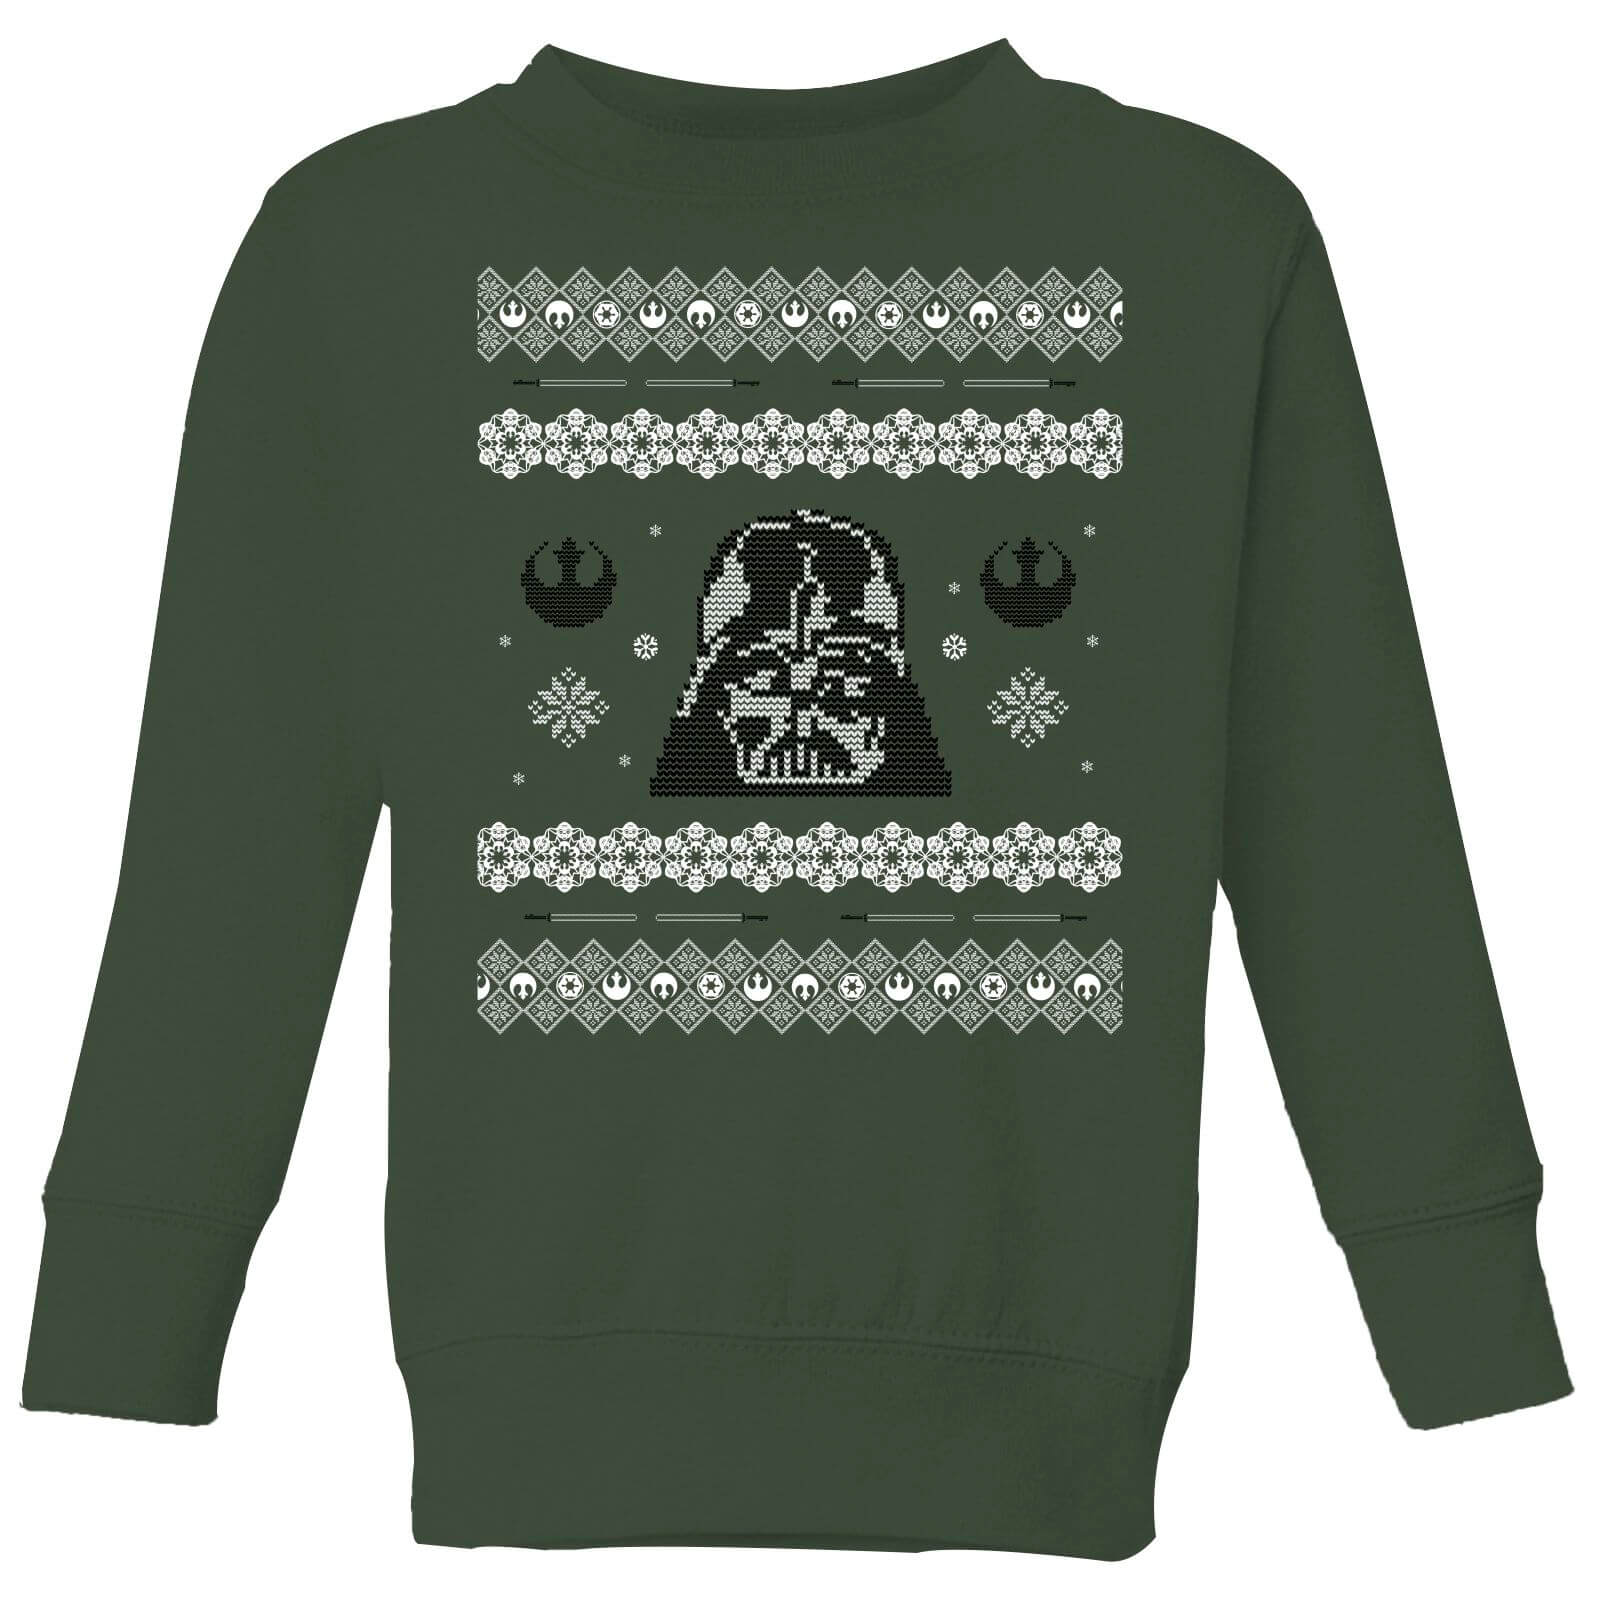 Star Wars Darth Vader Knit Kinder Weihnachtspullover – Grün - 3-4 Jahre